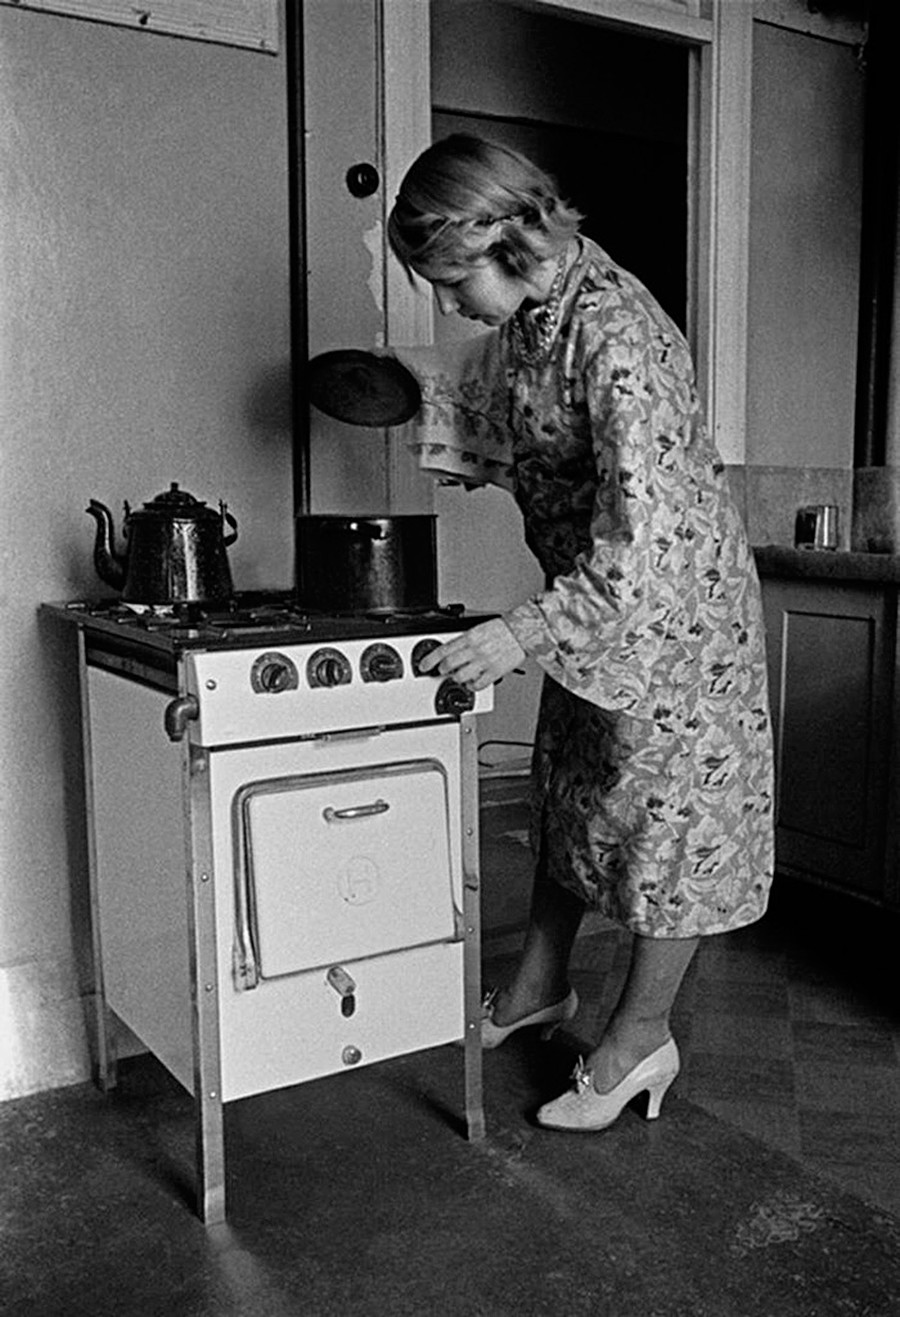 Eine Frau in der Küche

